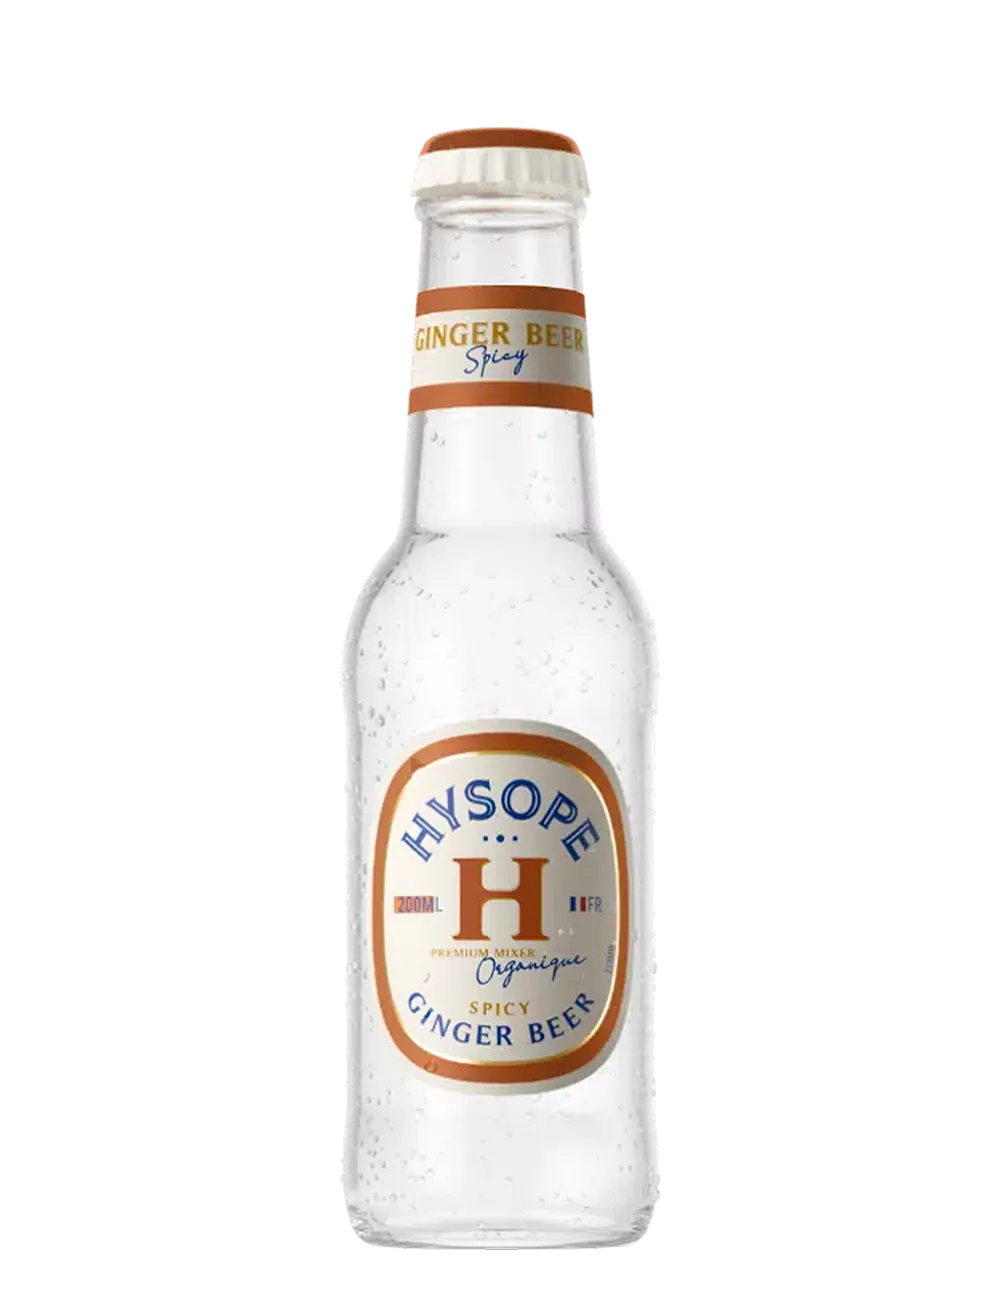 Hysope - Ginger Beer